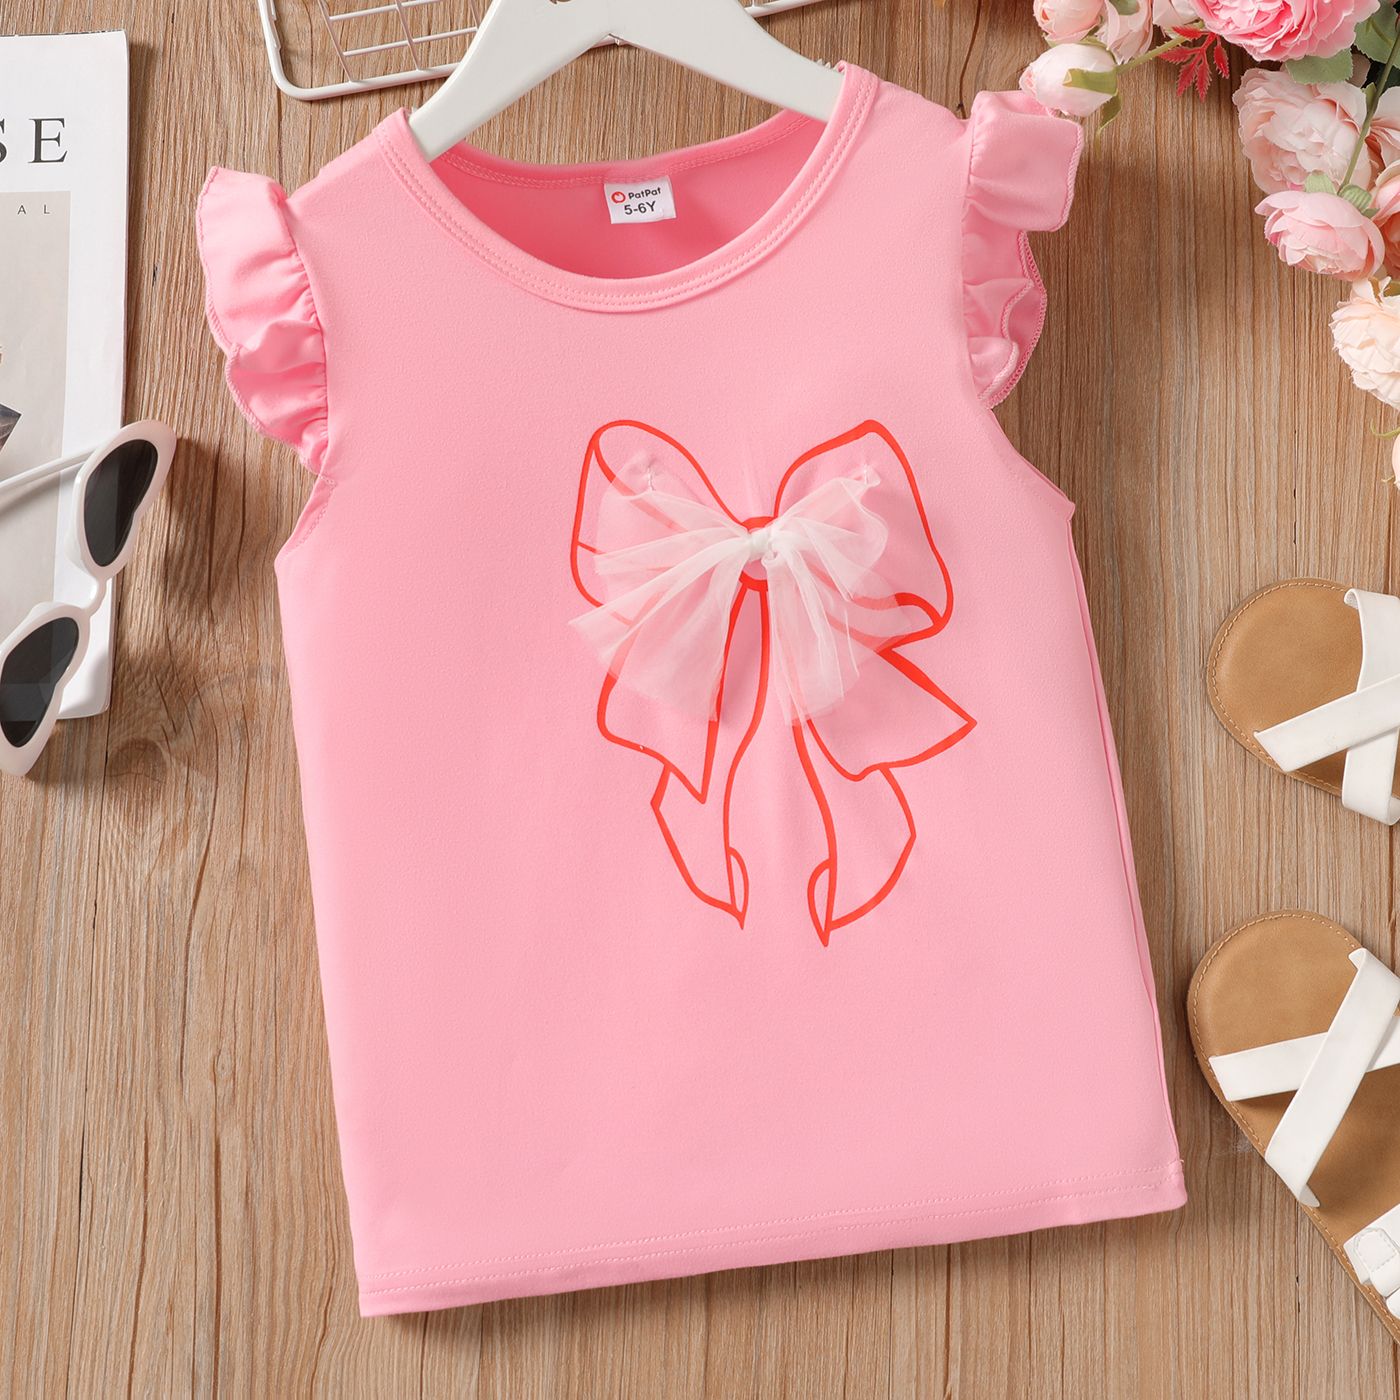 T-shirt à Manches Flottantes Design 3d Bowknot Pour Fille Enfant